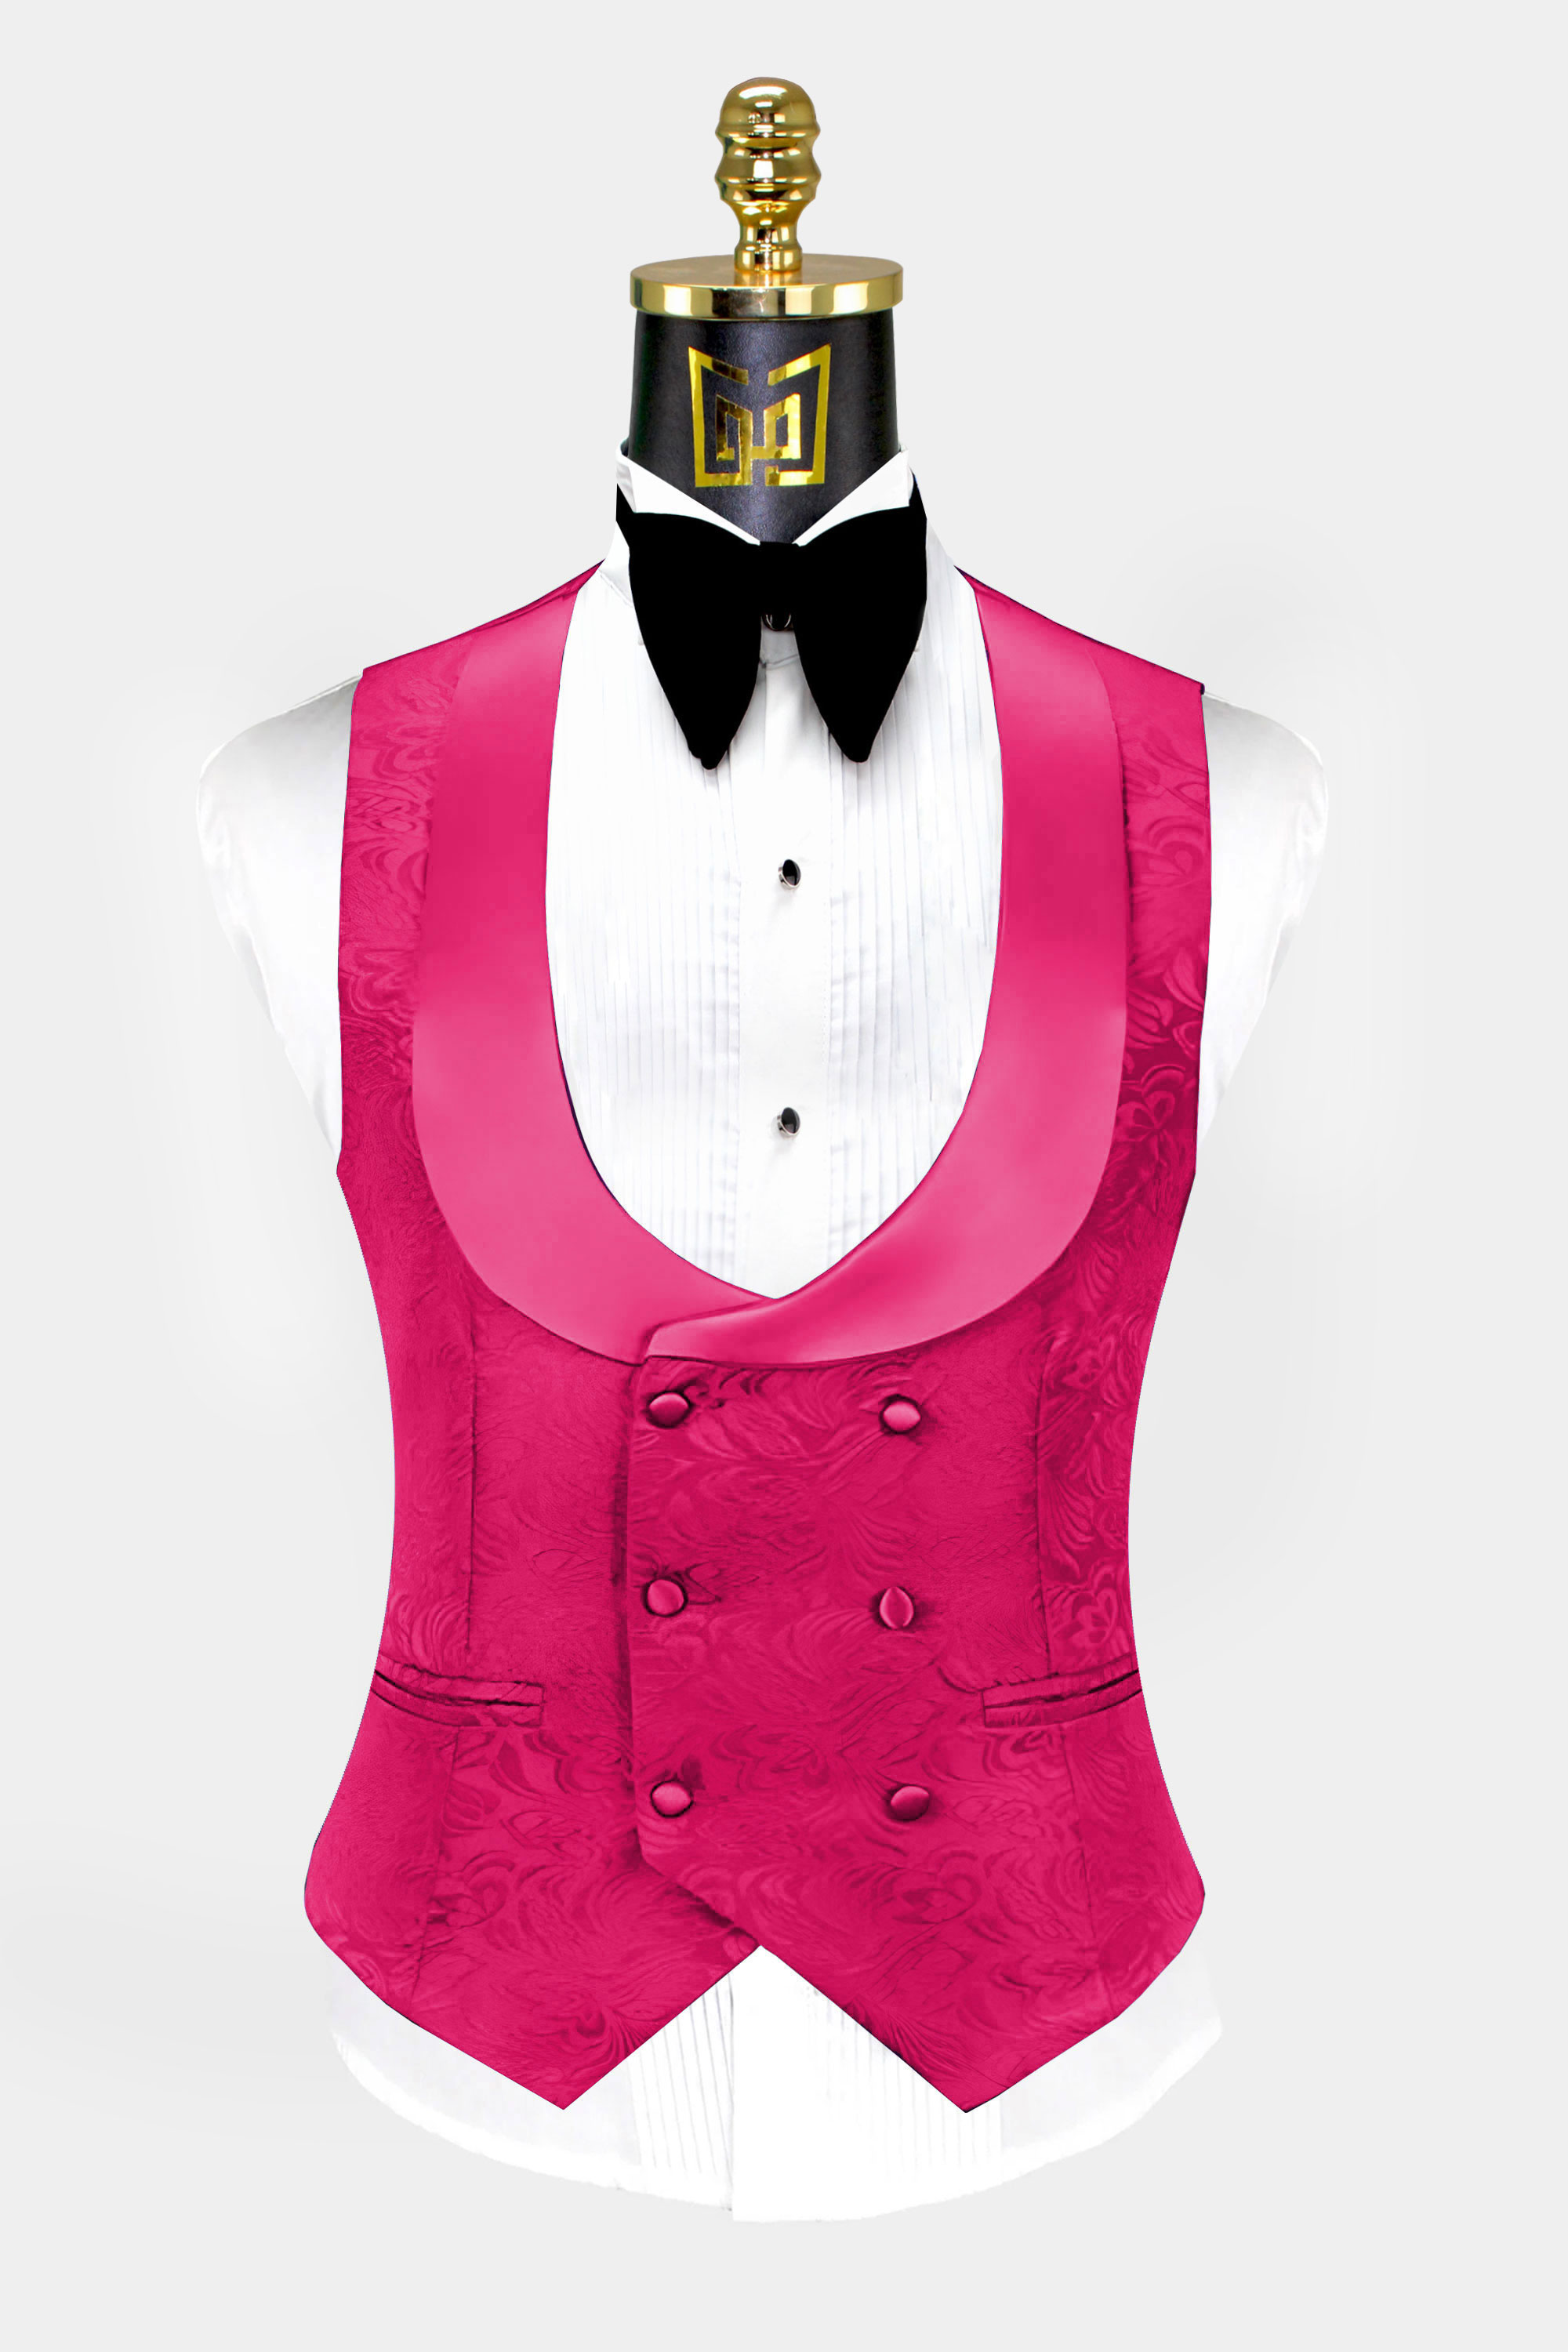 All-Pink-Tuxedo-Vest-Wedding-Waistcoat-from-Gentlemansguru.com